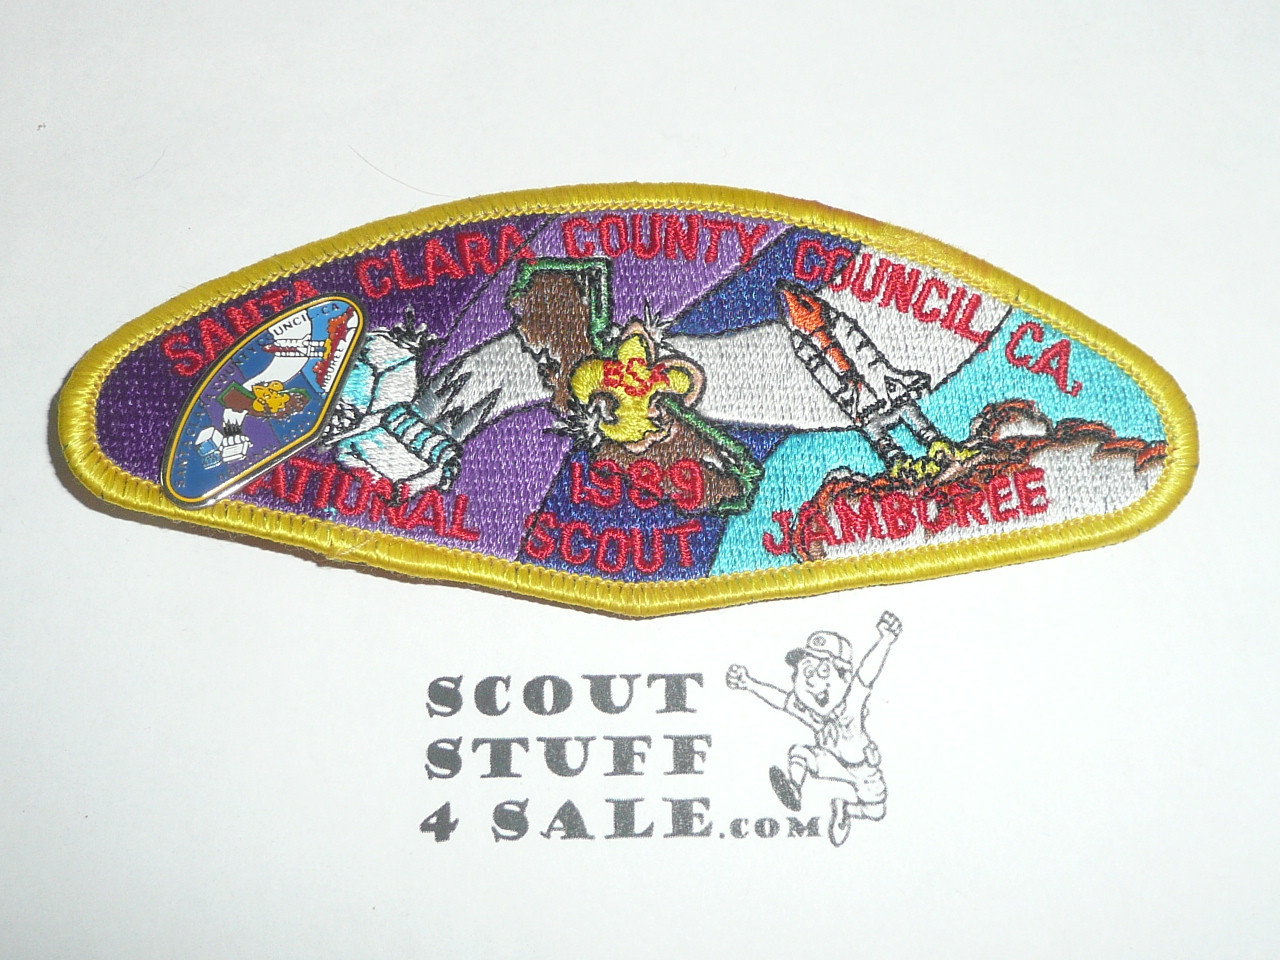 1989 National Jamboree JSP - Santa Clara Council with Contingent Pin, yellow